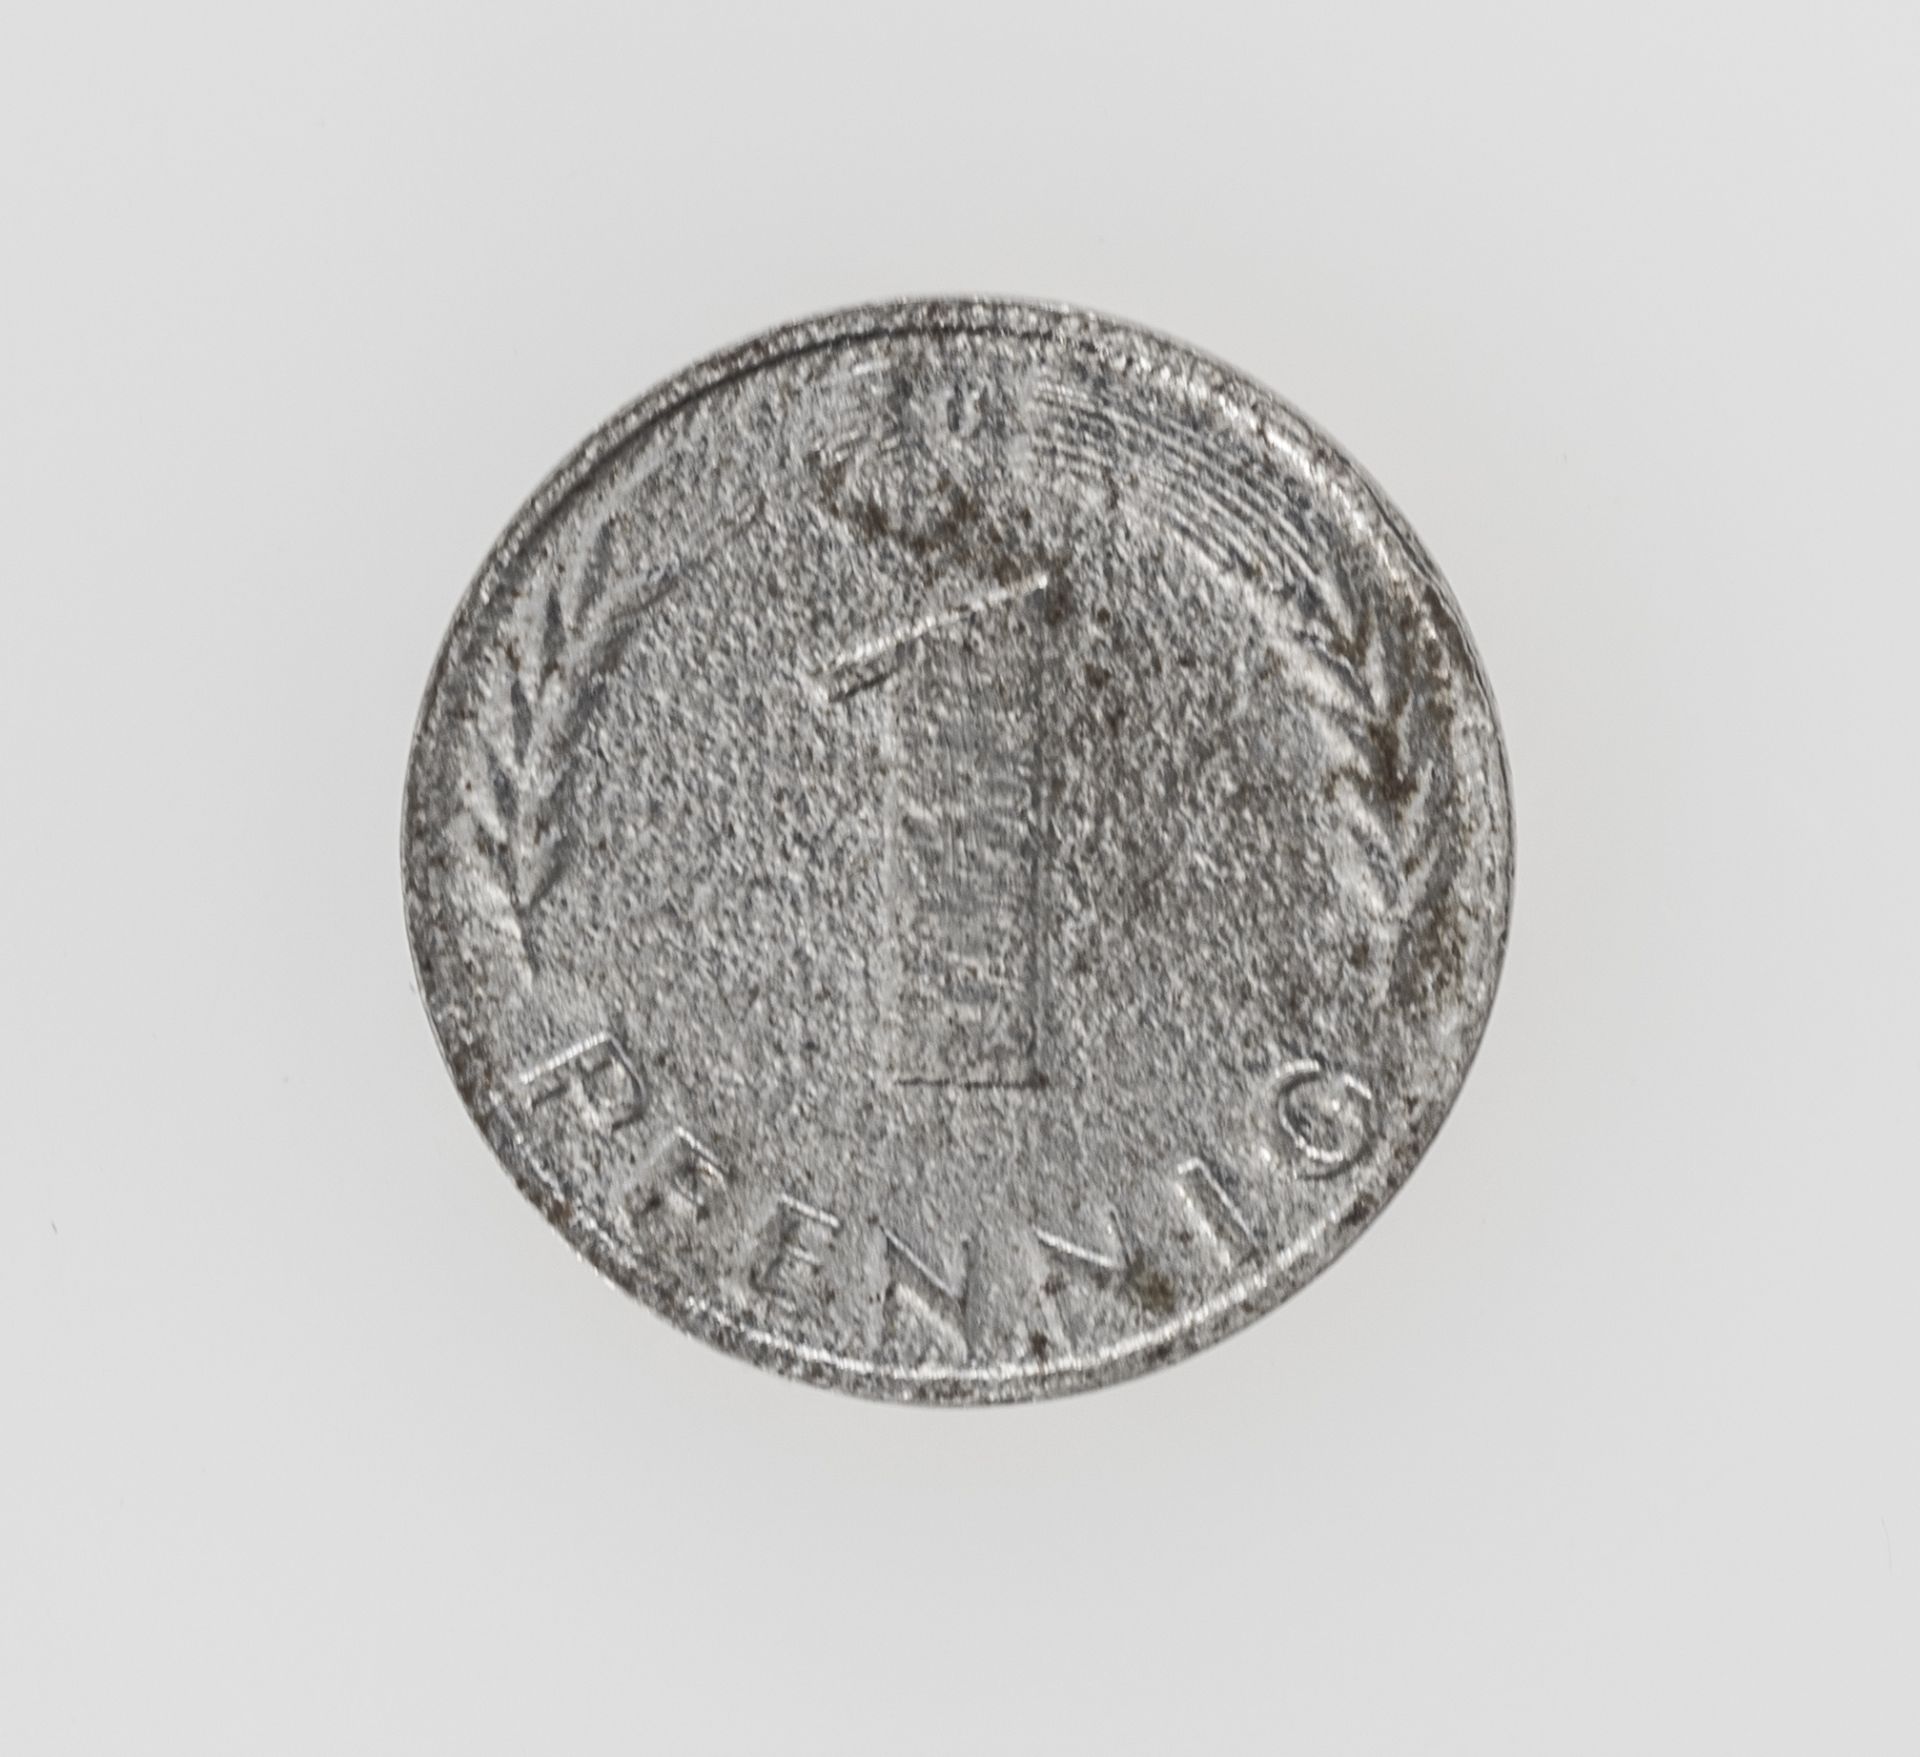 BRD 1950 D, 1 Pfennig - Münze, Fehlprägung: fehlende Plattierung.